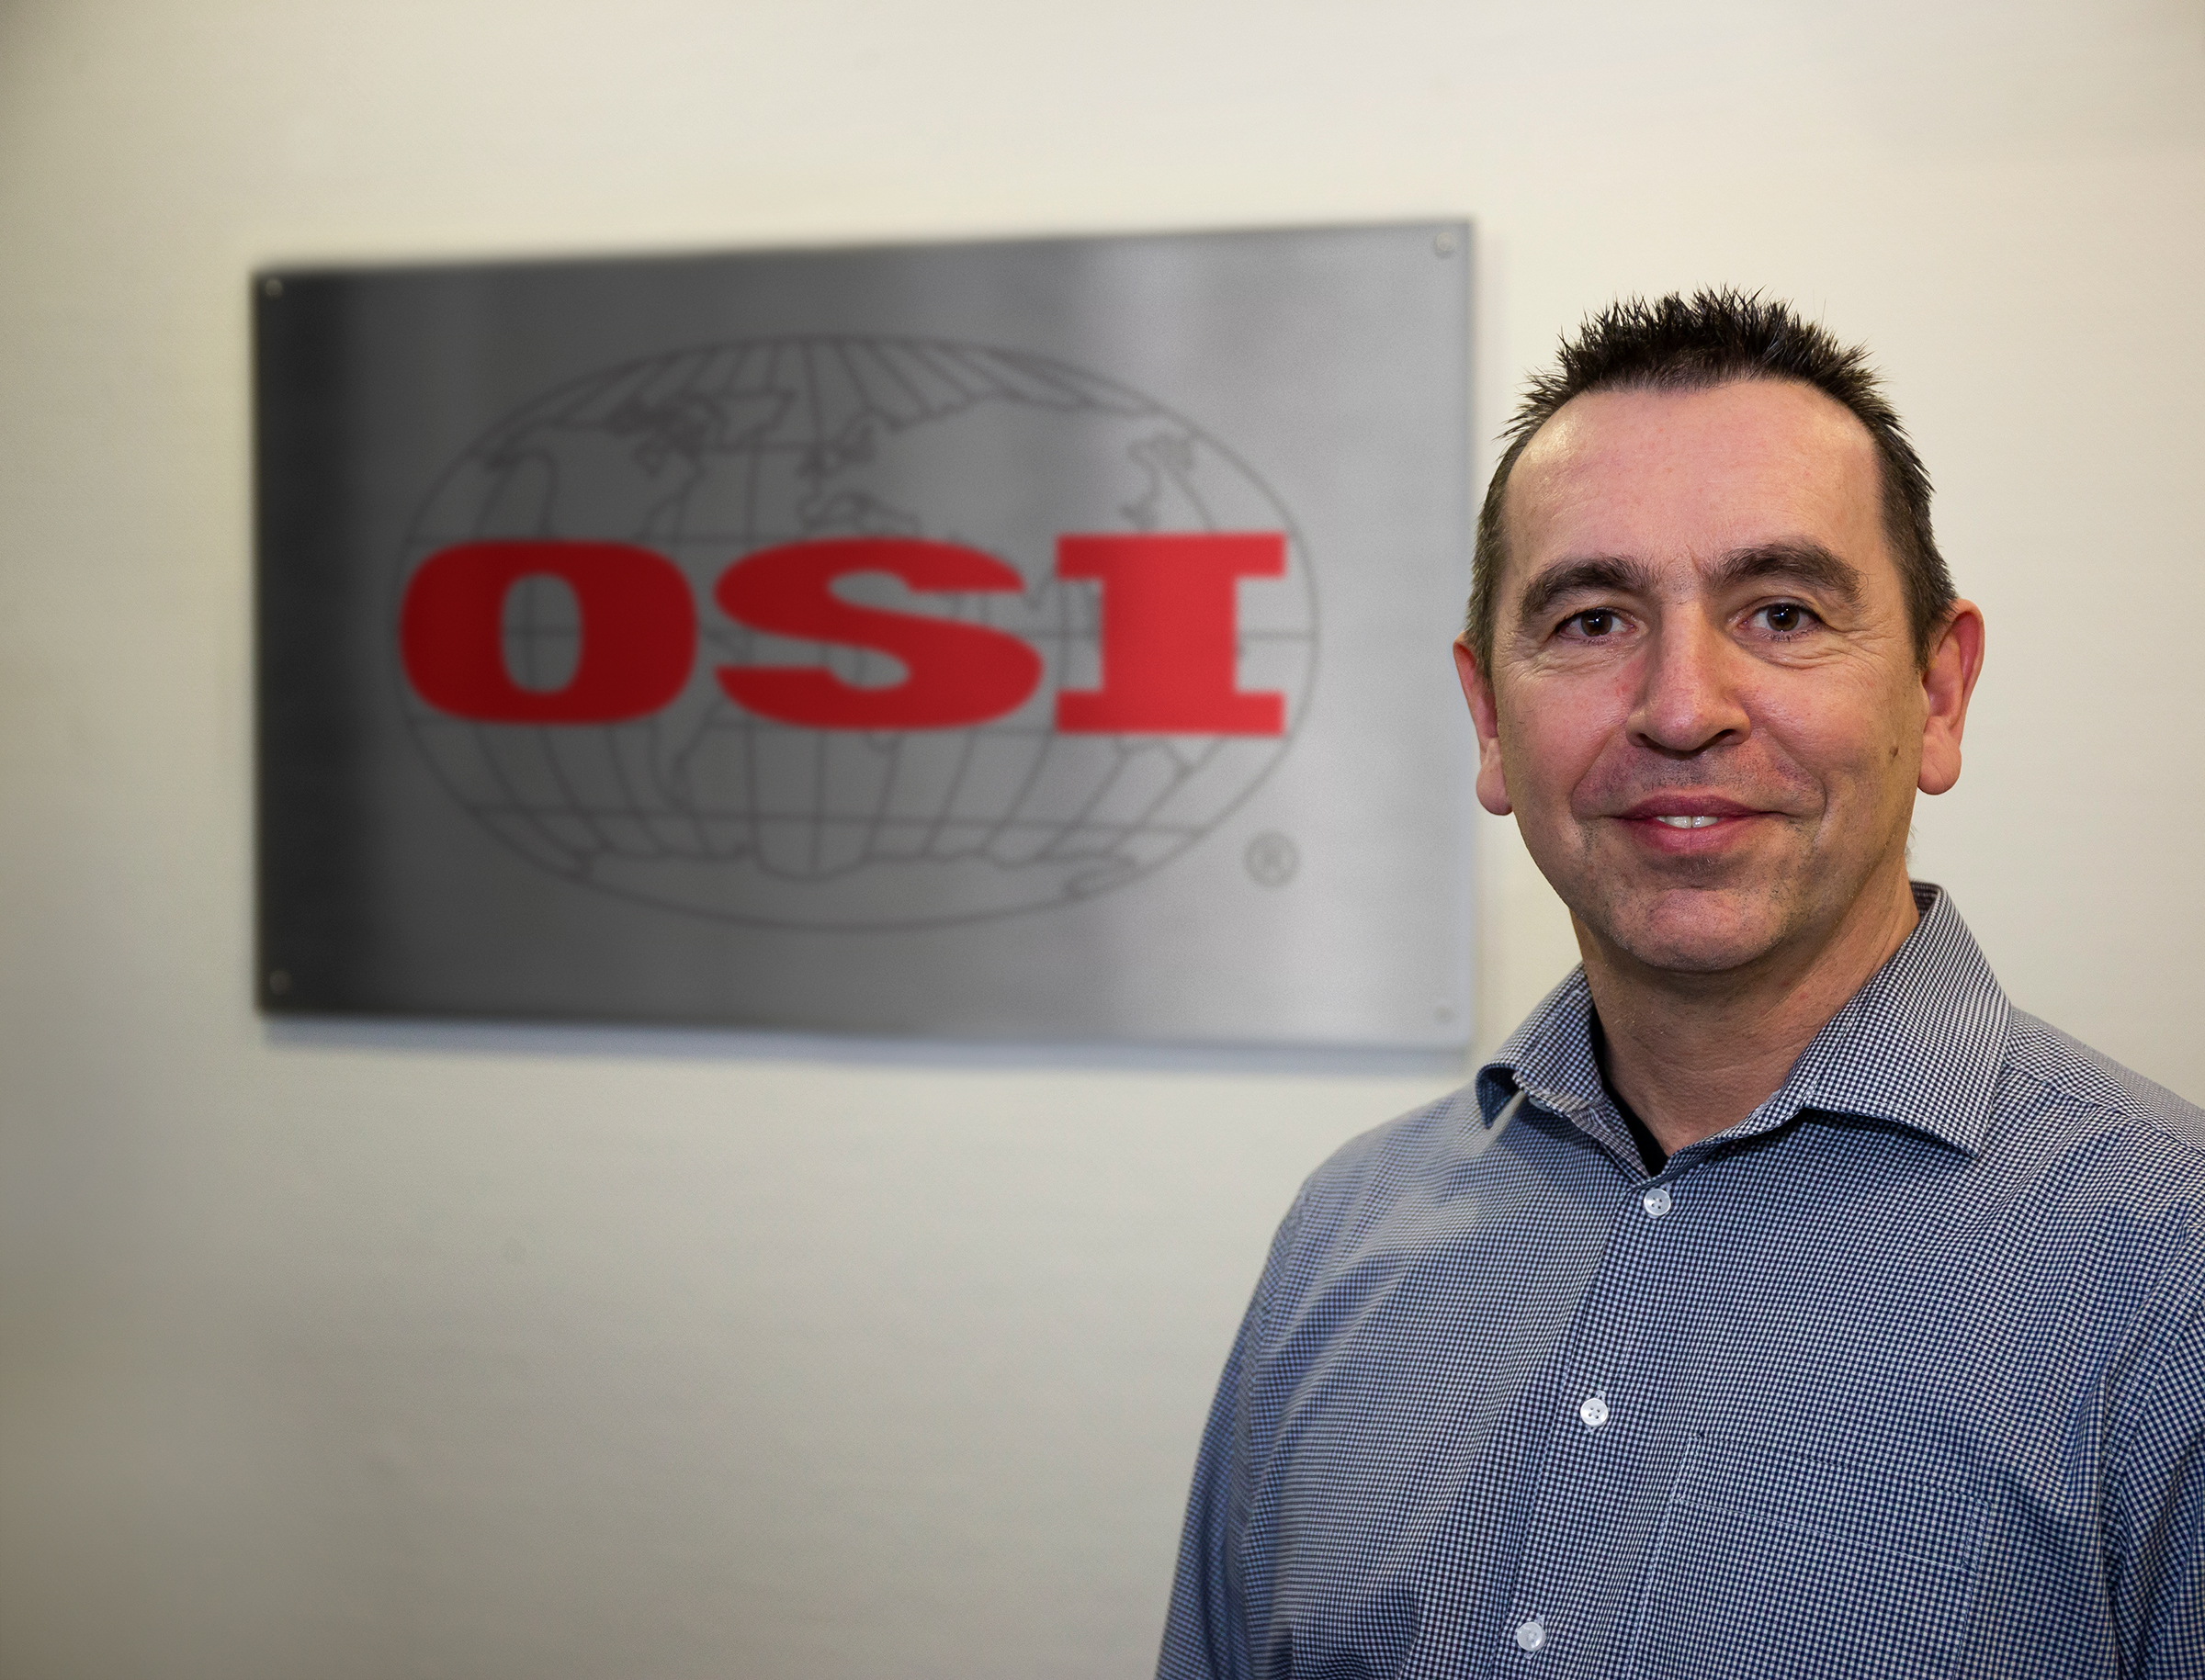 OSI Food Solutions Germany: Увеличение производительности и повышение качества